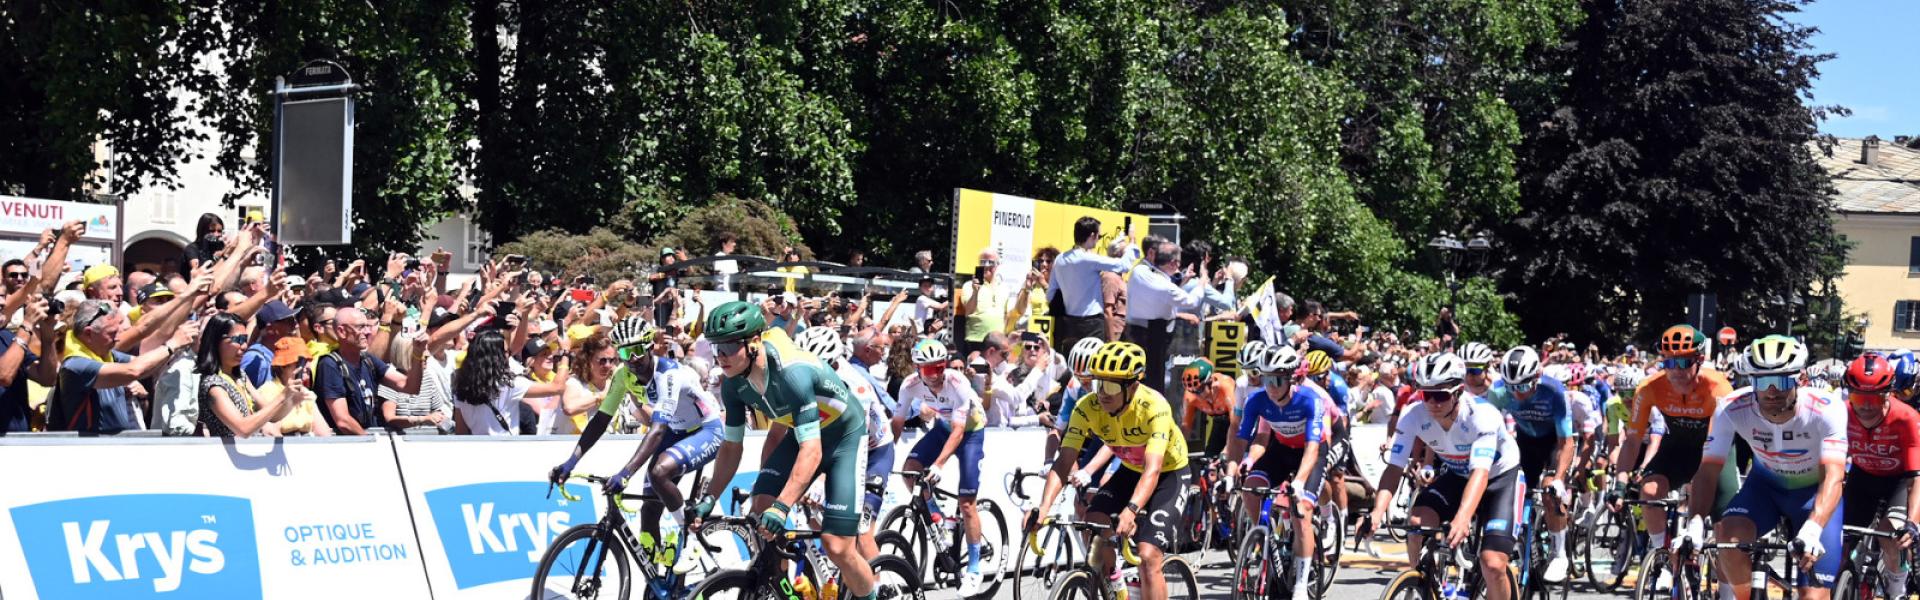 Ciclisti a Pinerolo per la tappa del Tour de France